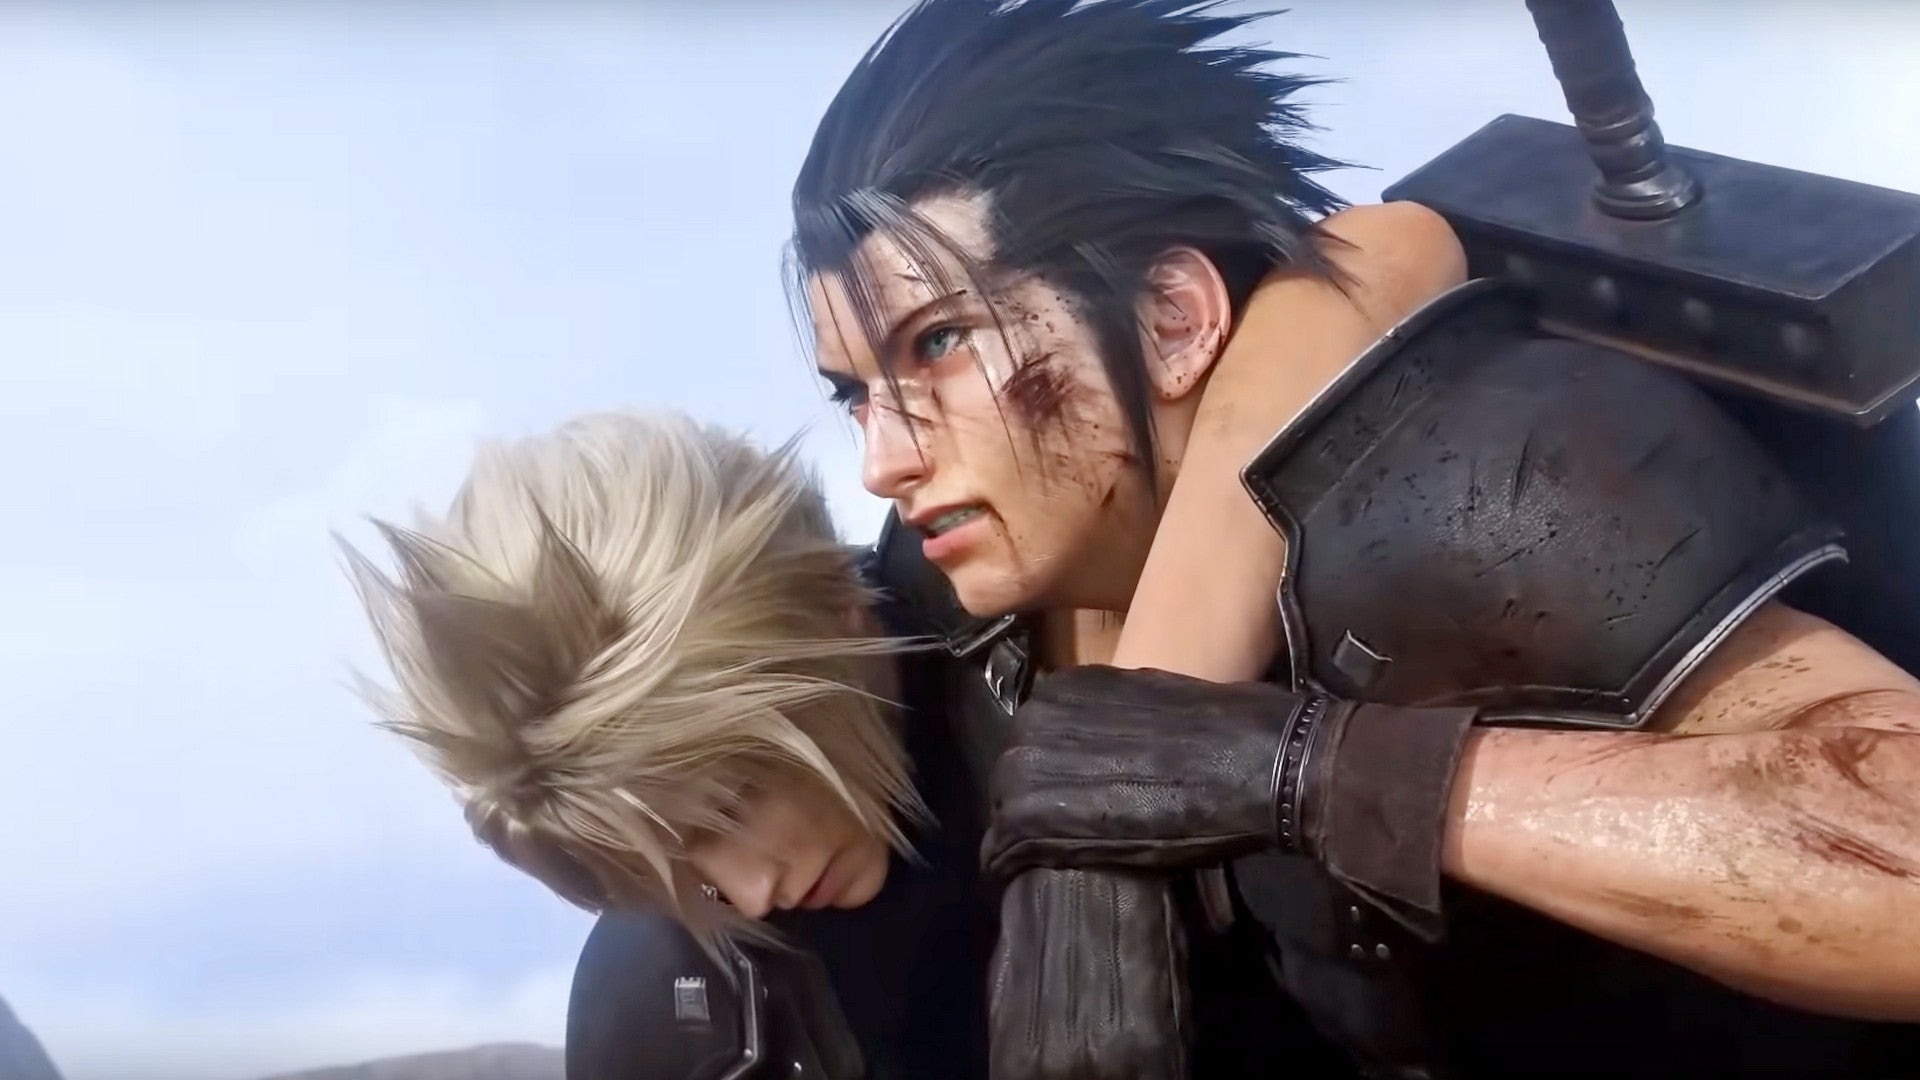 Bilder zu Das Final Fantasy 7 Remake wird eine Trilogie, Teil zwei erscheint Ende 2023